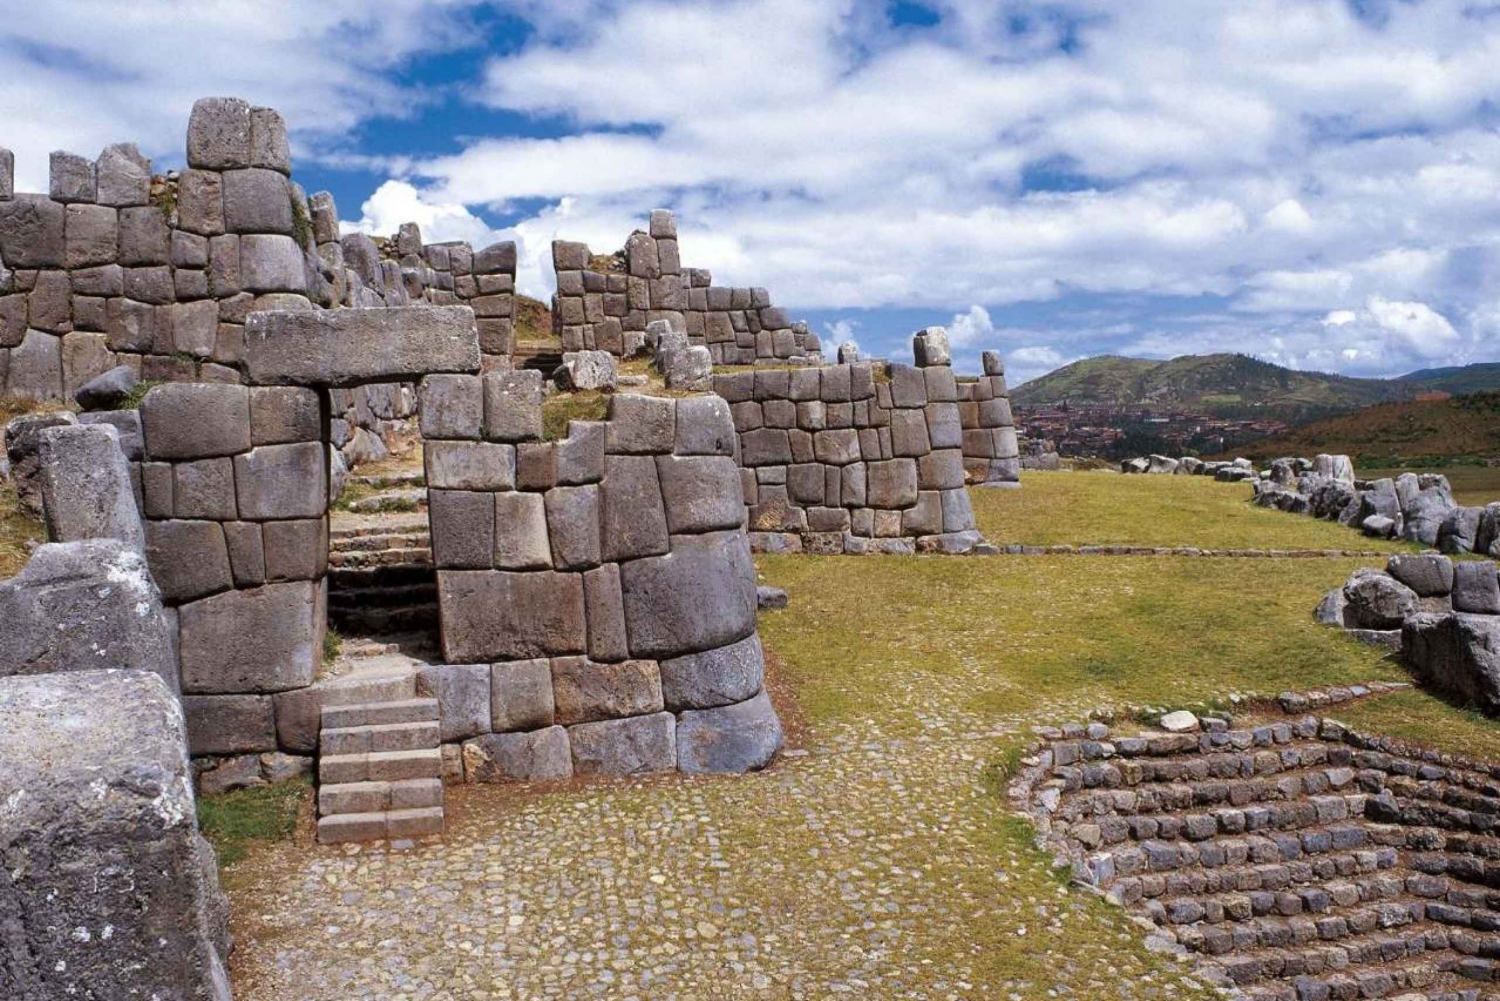 |Zwiedzanie Cusco, Święta Dolina, Machu Picchu - Boliwia 13 dni|